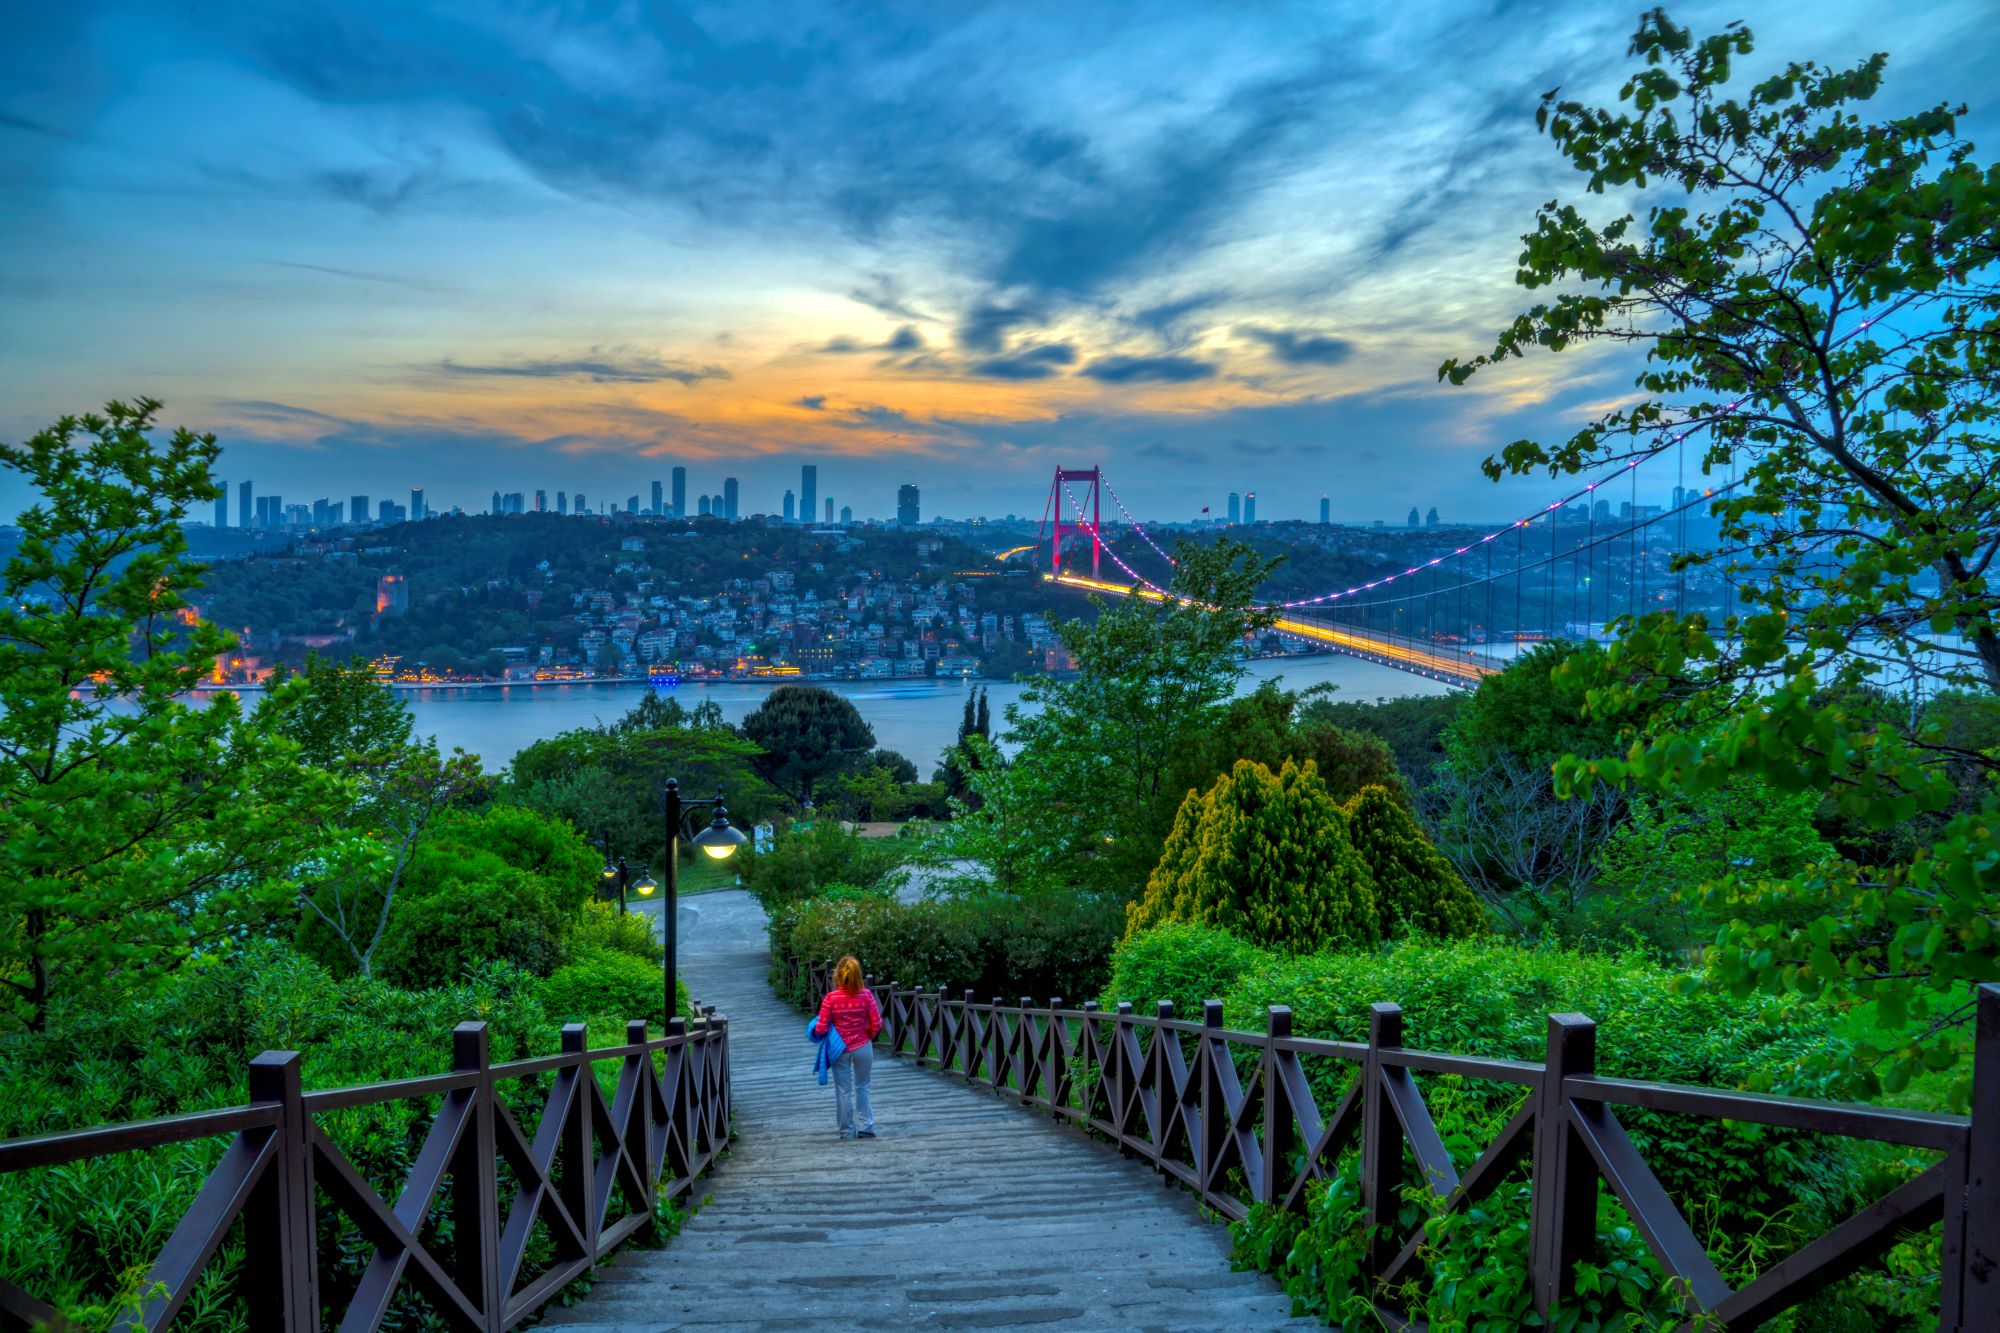 來伊斯坦堡享受柳綠桃紅的春季色彩